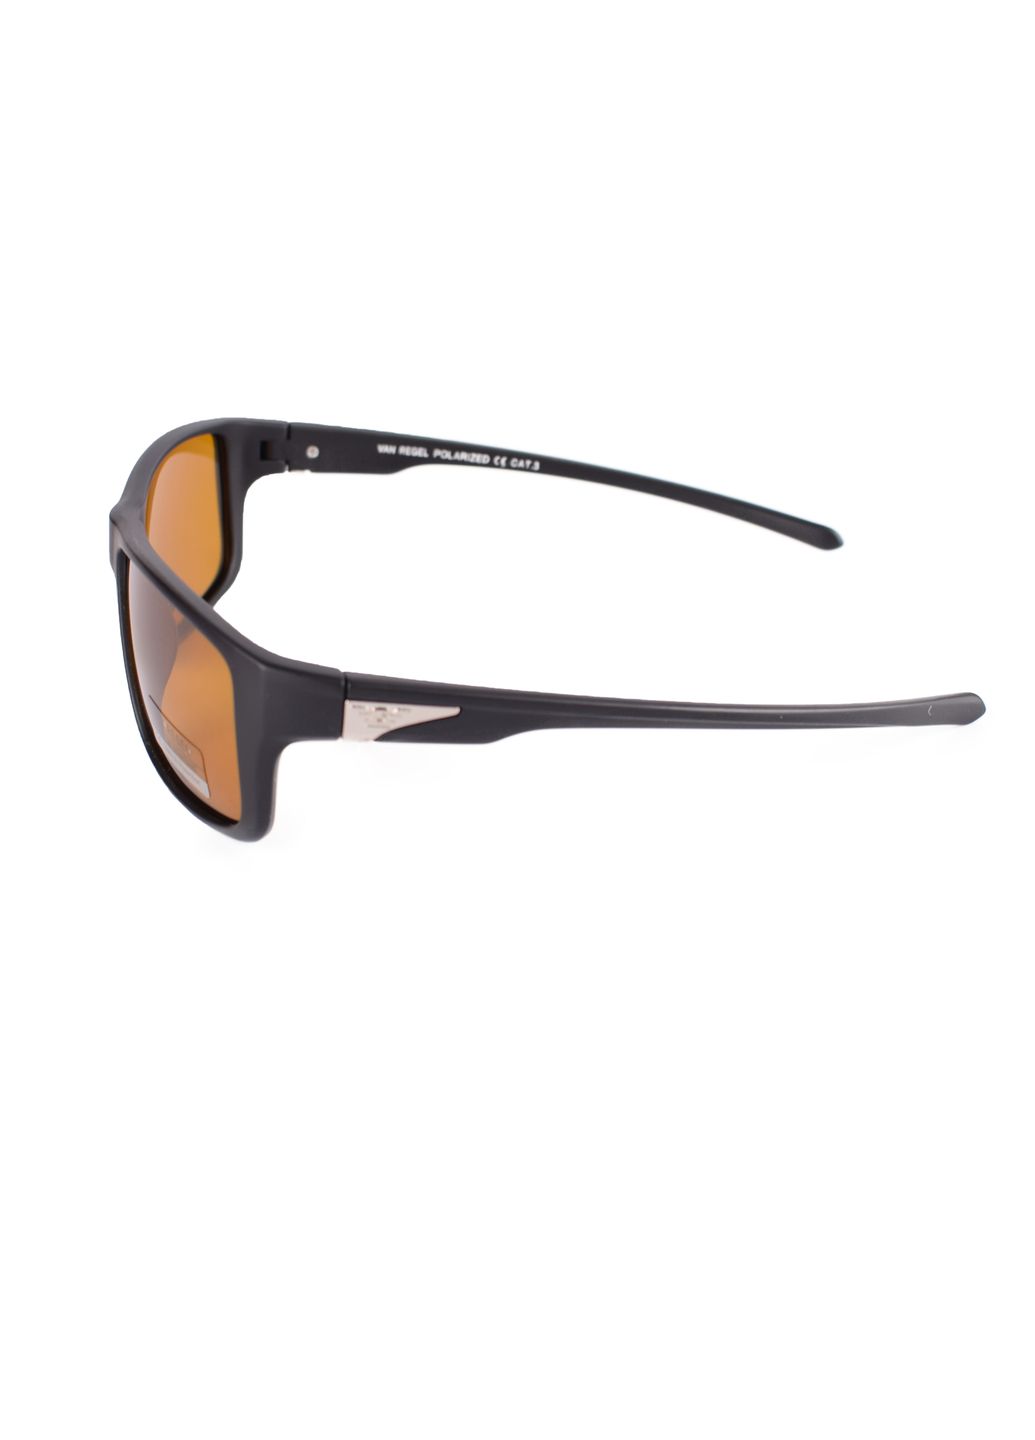 Купить Мужские очки для водителя VAN REGEL P1833 123006 - Черный в интернет-магазине